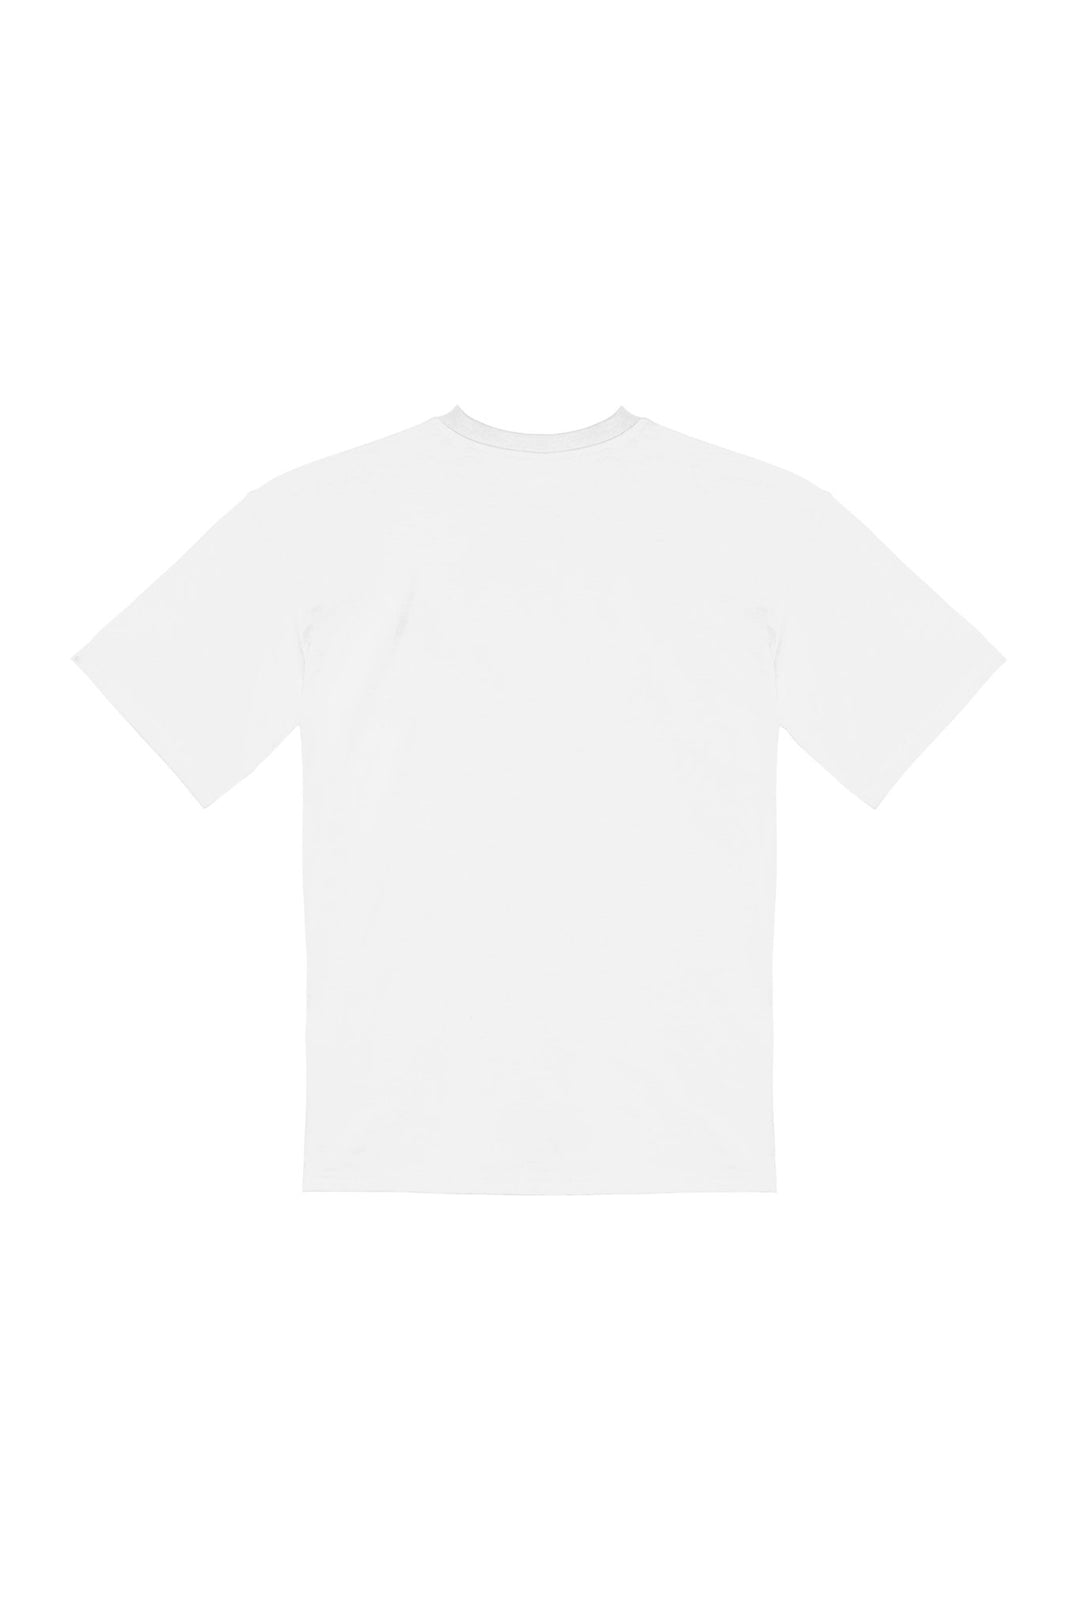 IL PLEUT C'EST RELOU・T - shirt unisexe・Blanc - Le Cartel